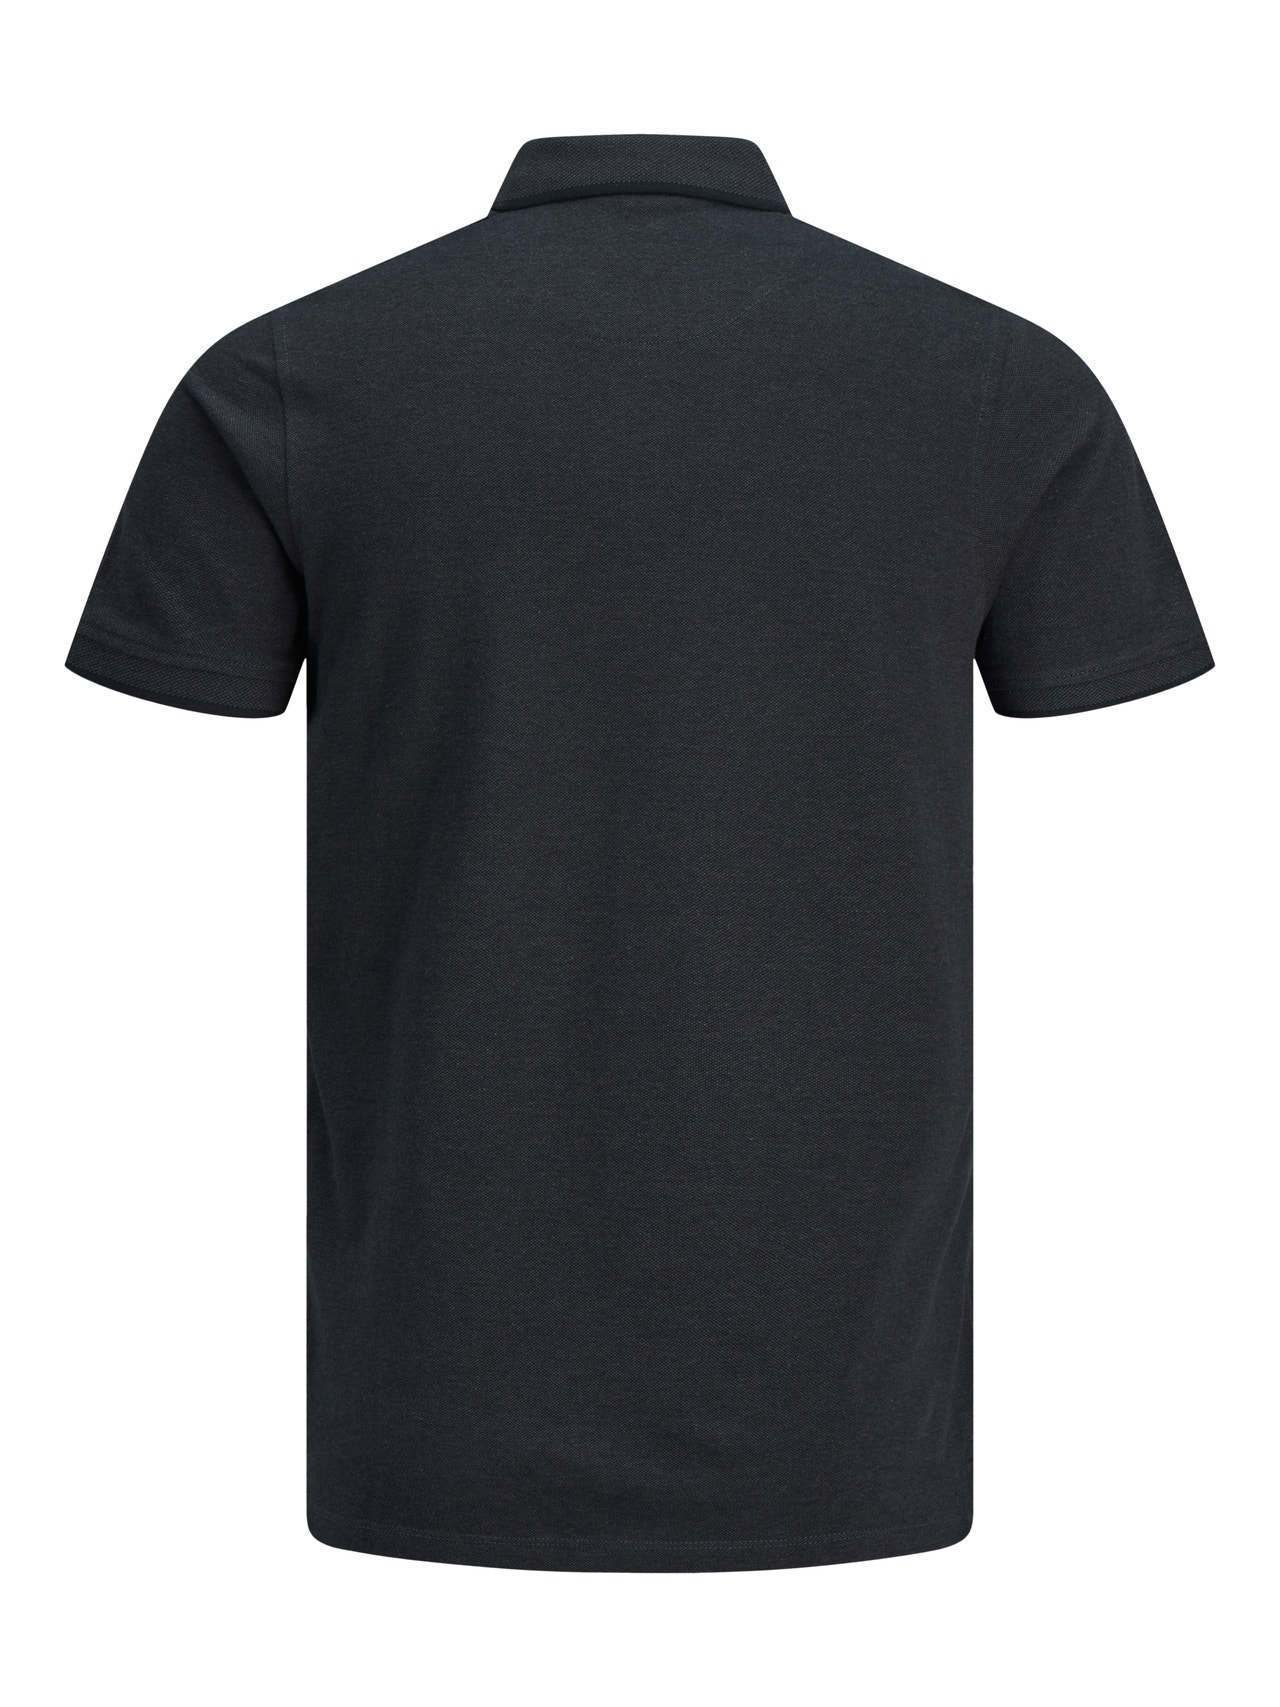 Jack & Jones Vanlig Polo T-skjorte -Dark Grey Melange - 12136668